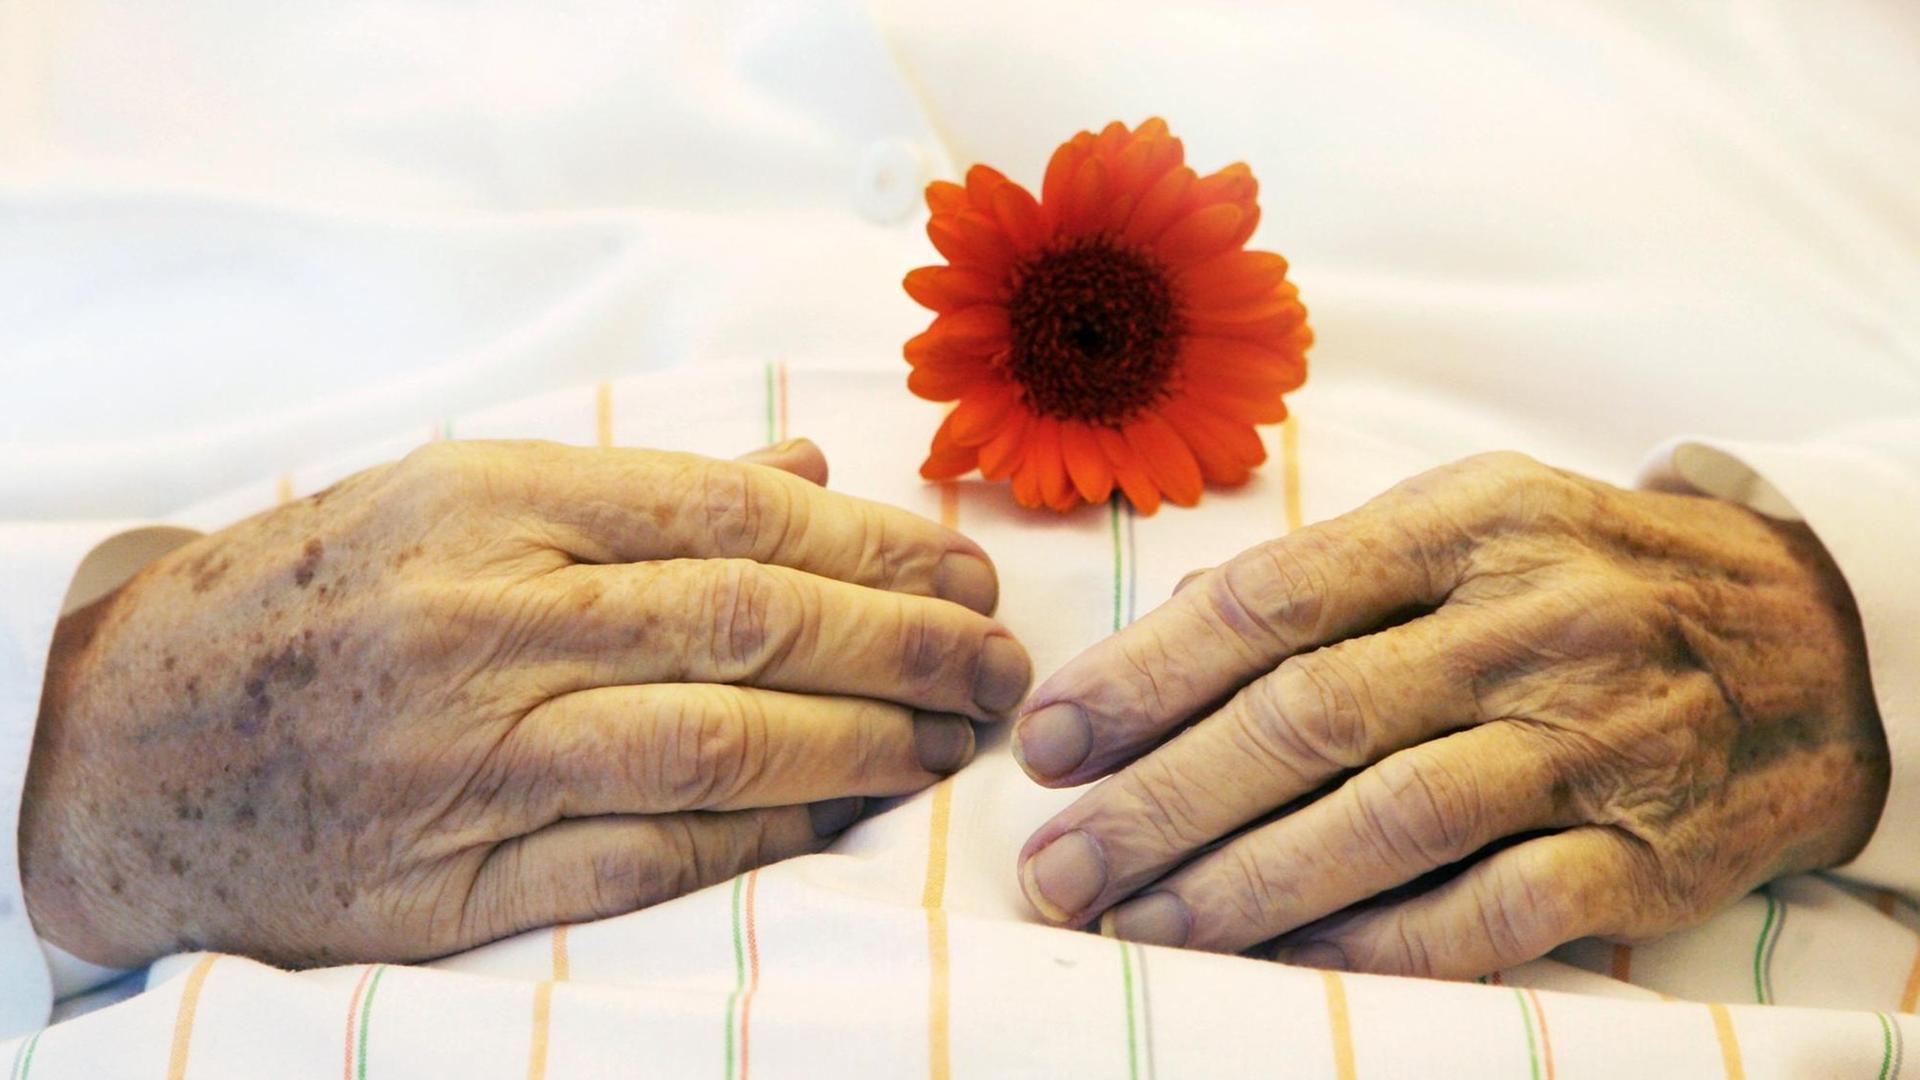 Die Hände einer alten Frau mit einer Blume auf einer Bettdecke.